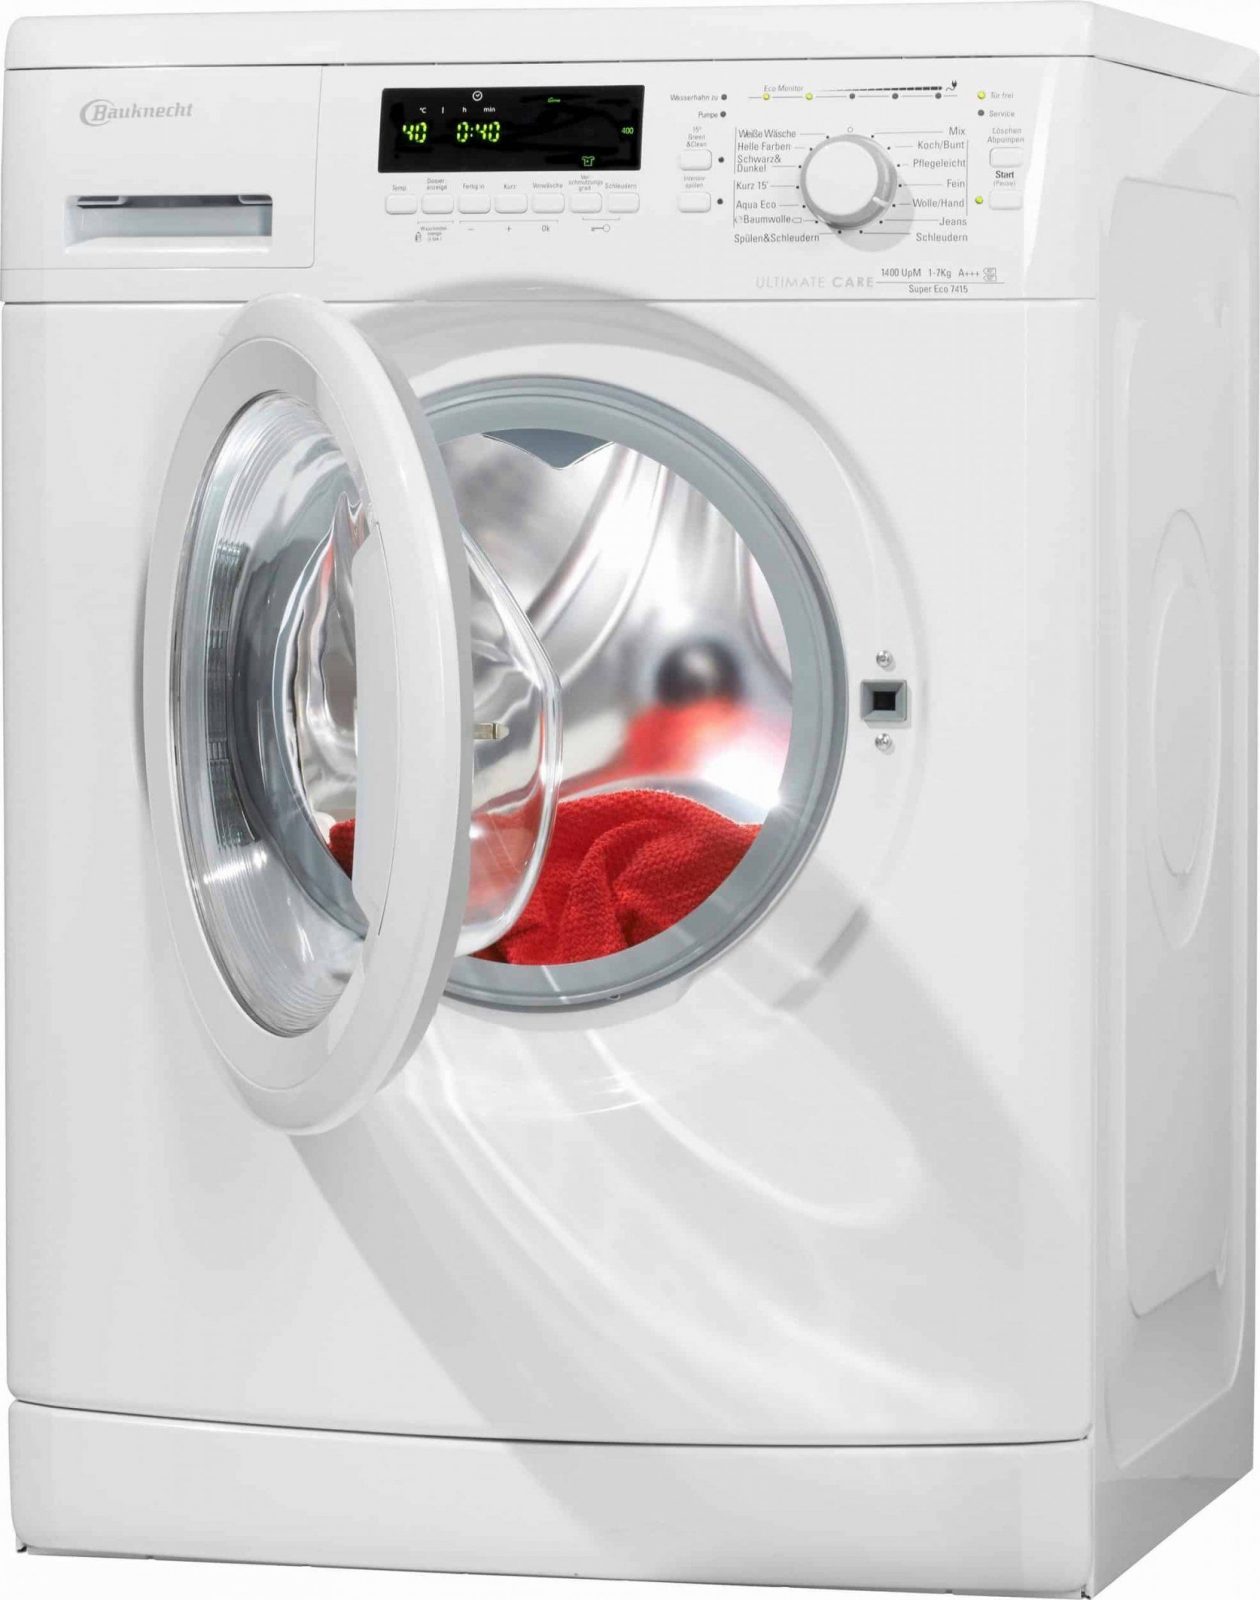 Bauknecht Super Eco 7415 Waschmaschine Im Test 2018 von Waschmaschine Bauknecht Super Eco 7415 Photo